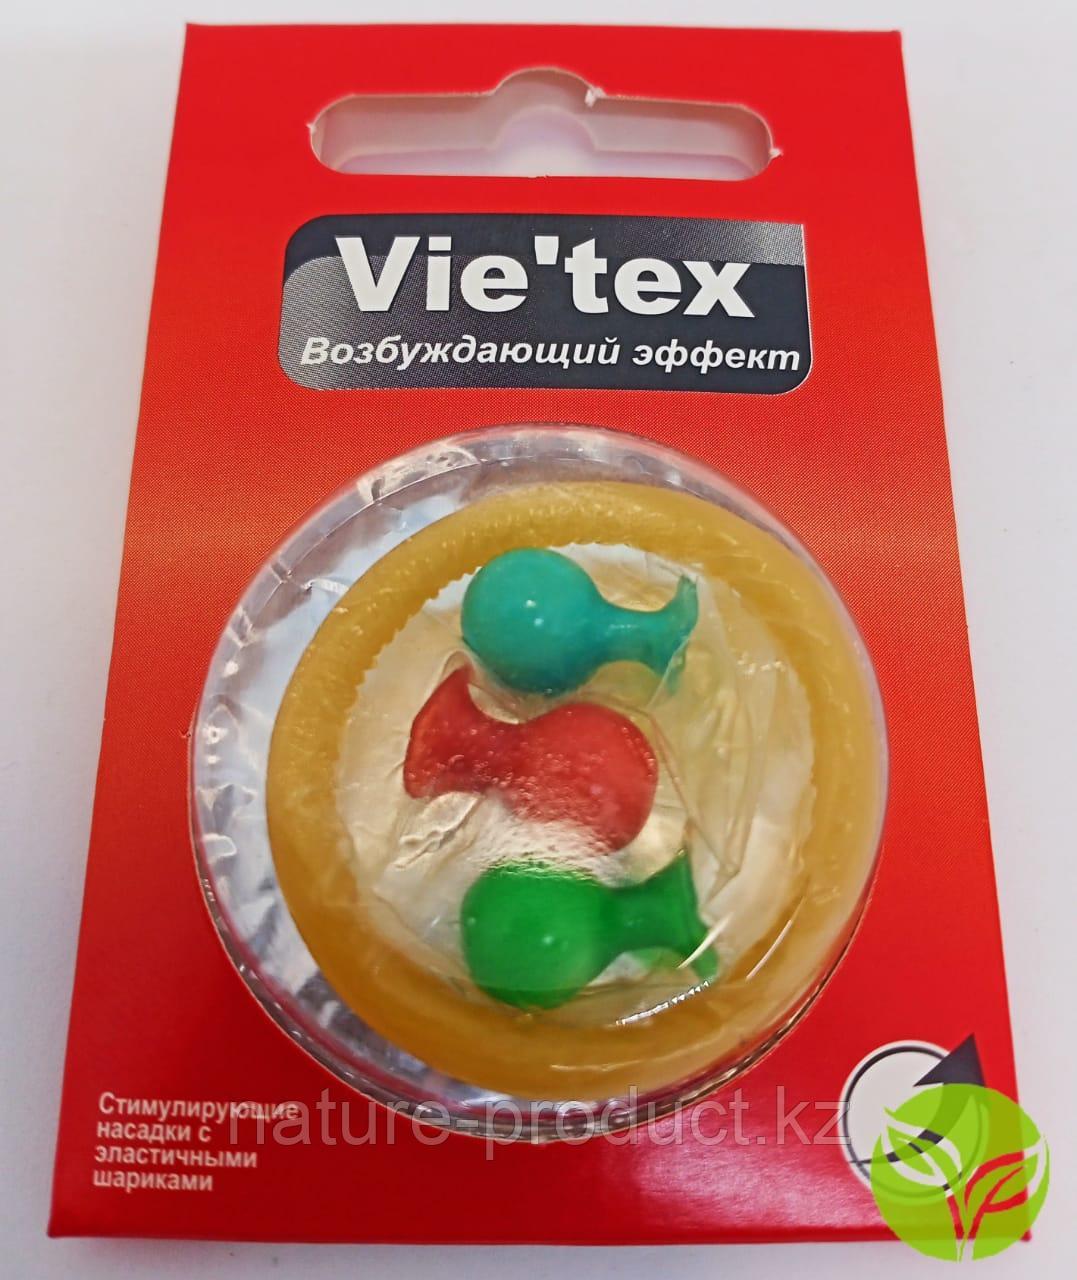 Презервативы Vie`tex с эластичными шариками "Возбуждающий эффект"